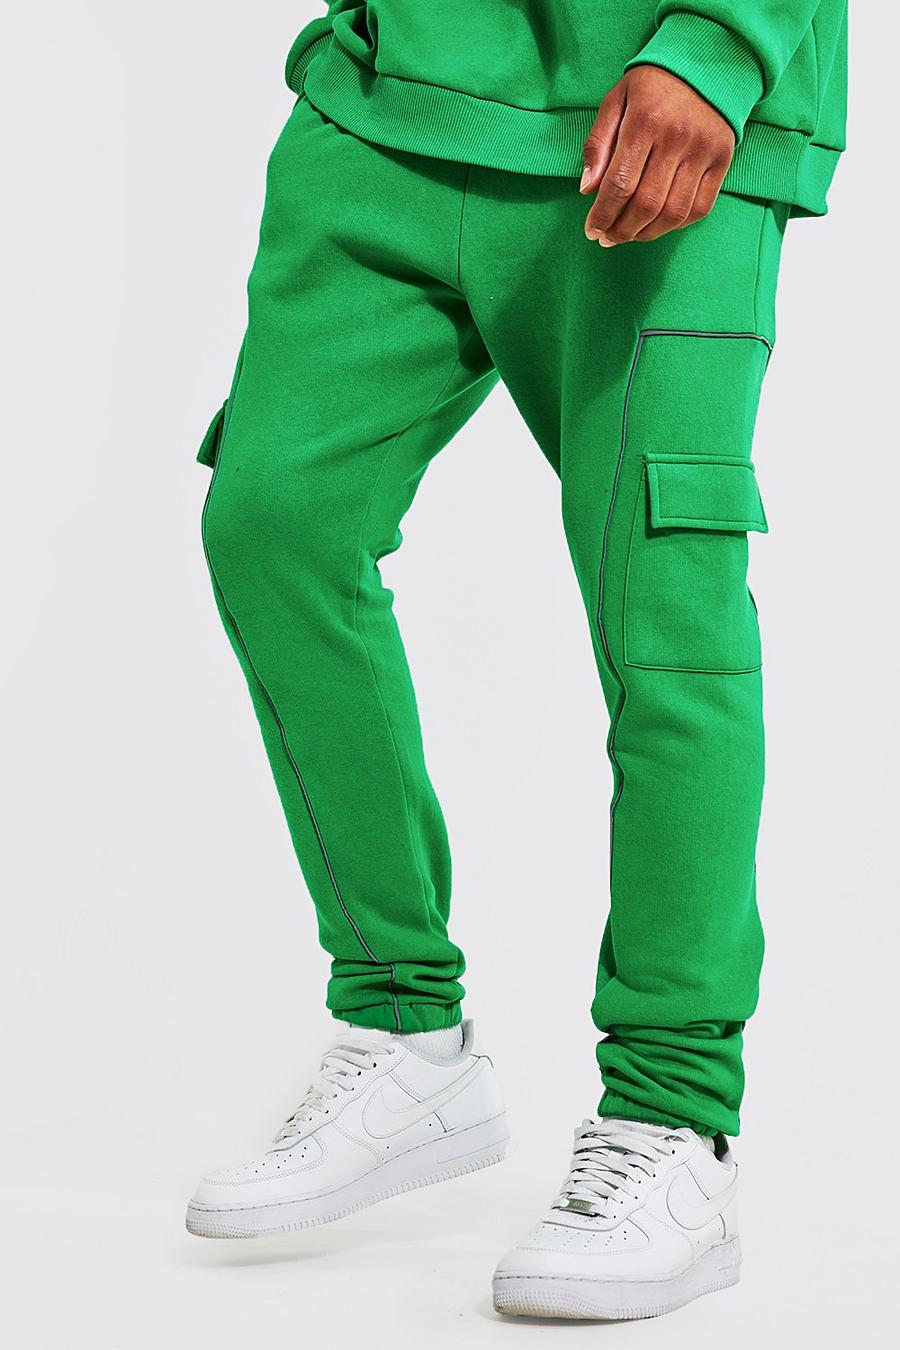 ירוק בוהק מכנסי ריצה דגמ"ח עם פסים דקים מחזירי אור, לגברים גבוהים image number 1